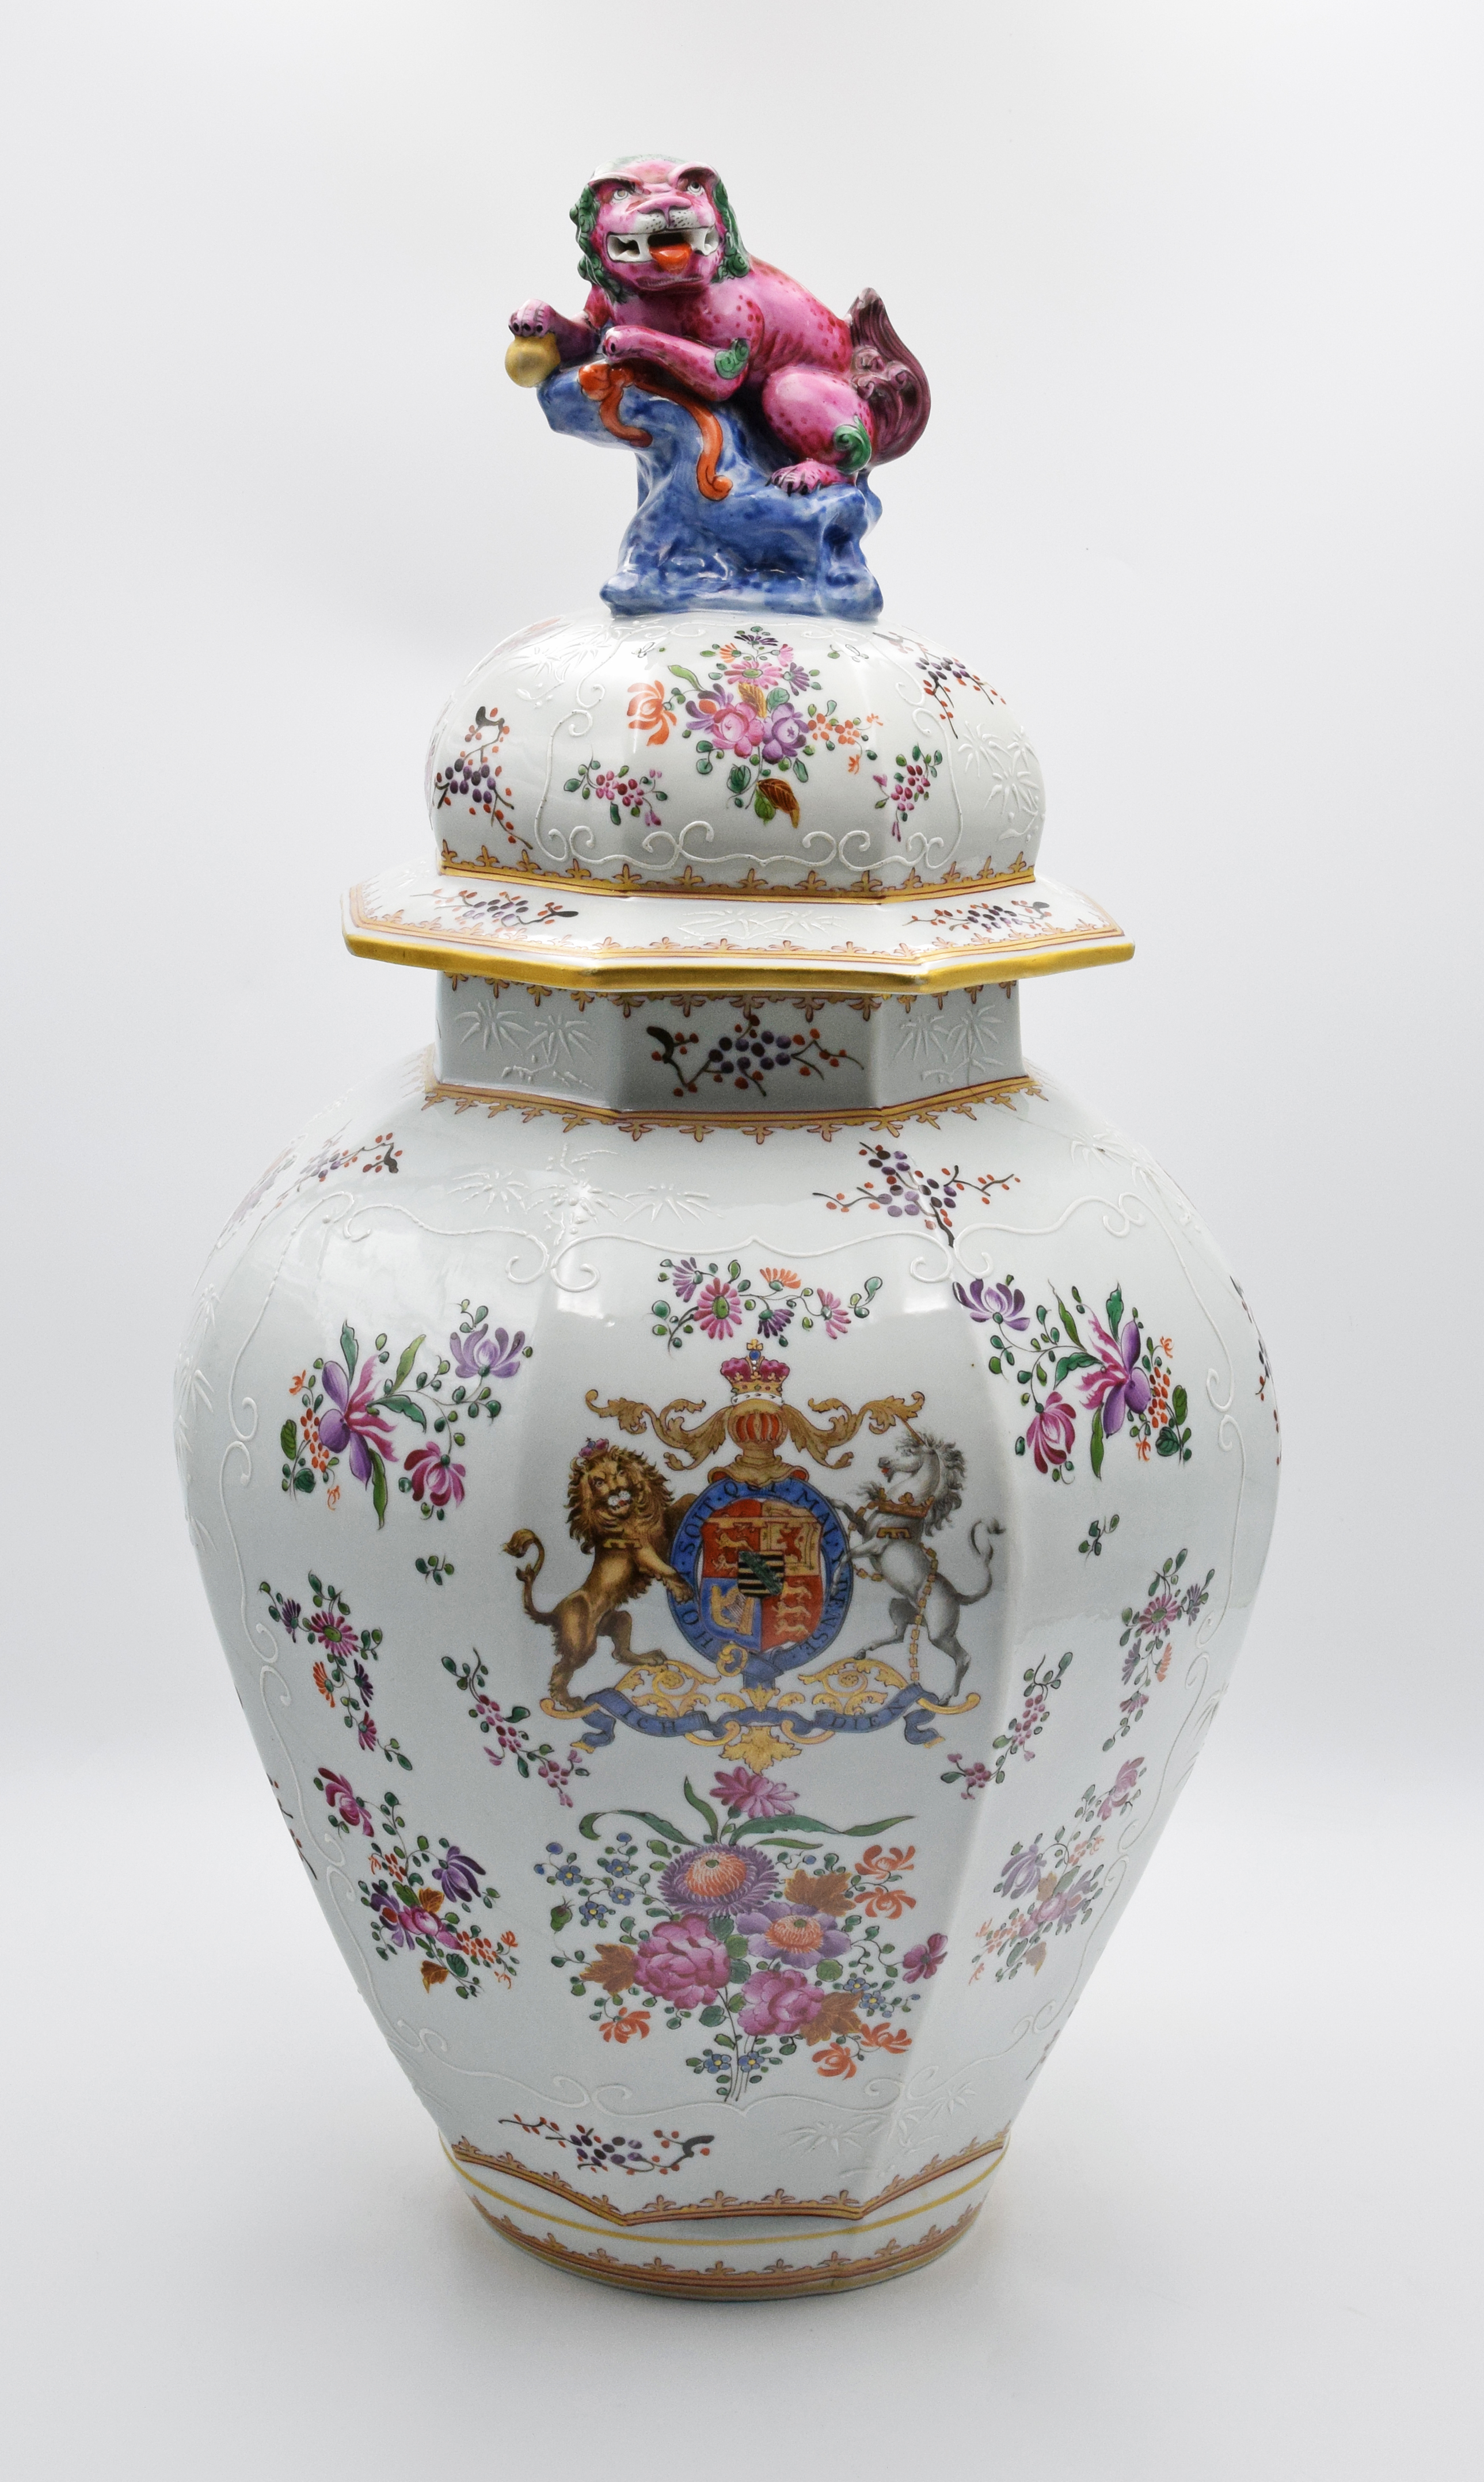 Wazon z pokrywą, z herbem Wielkiej Brytanii, z dekoracją emaliową i kwiatową w typie chińskiej porcelany eksportowej